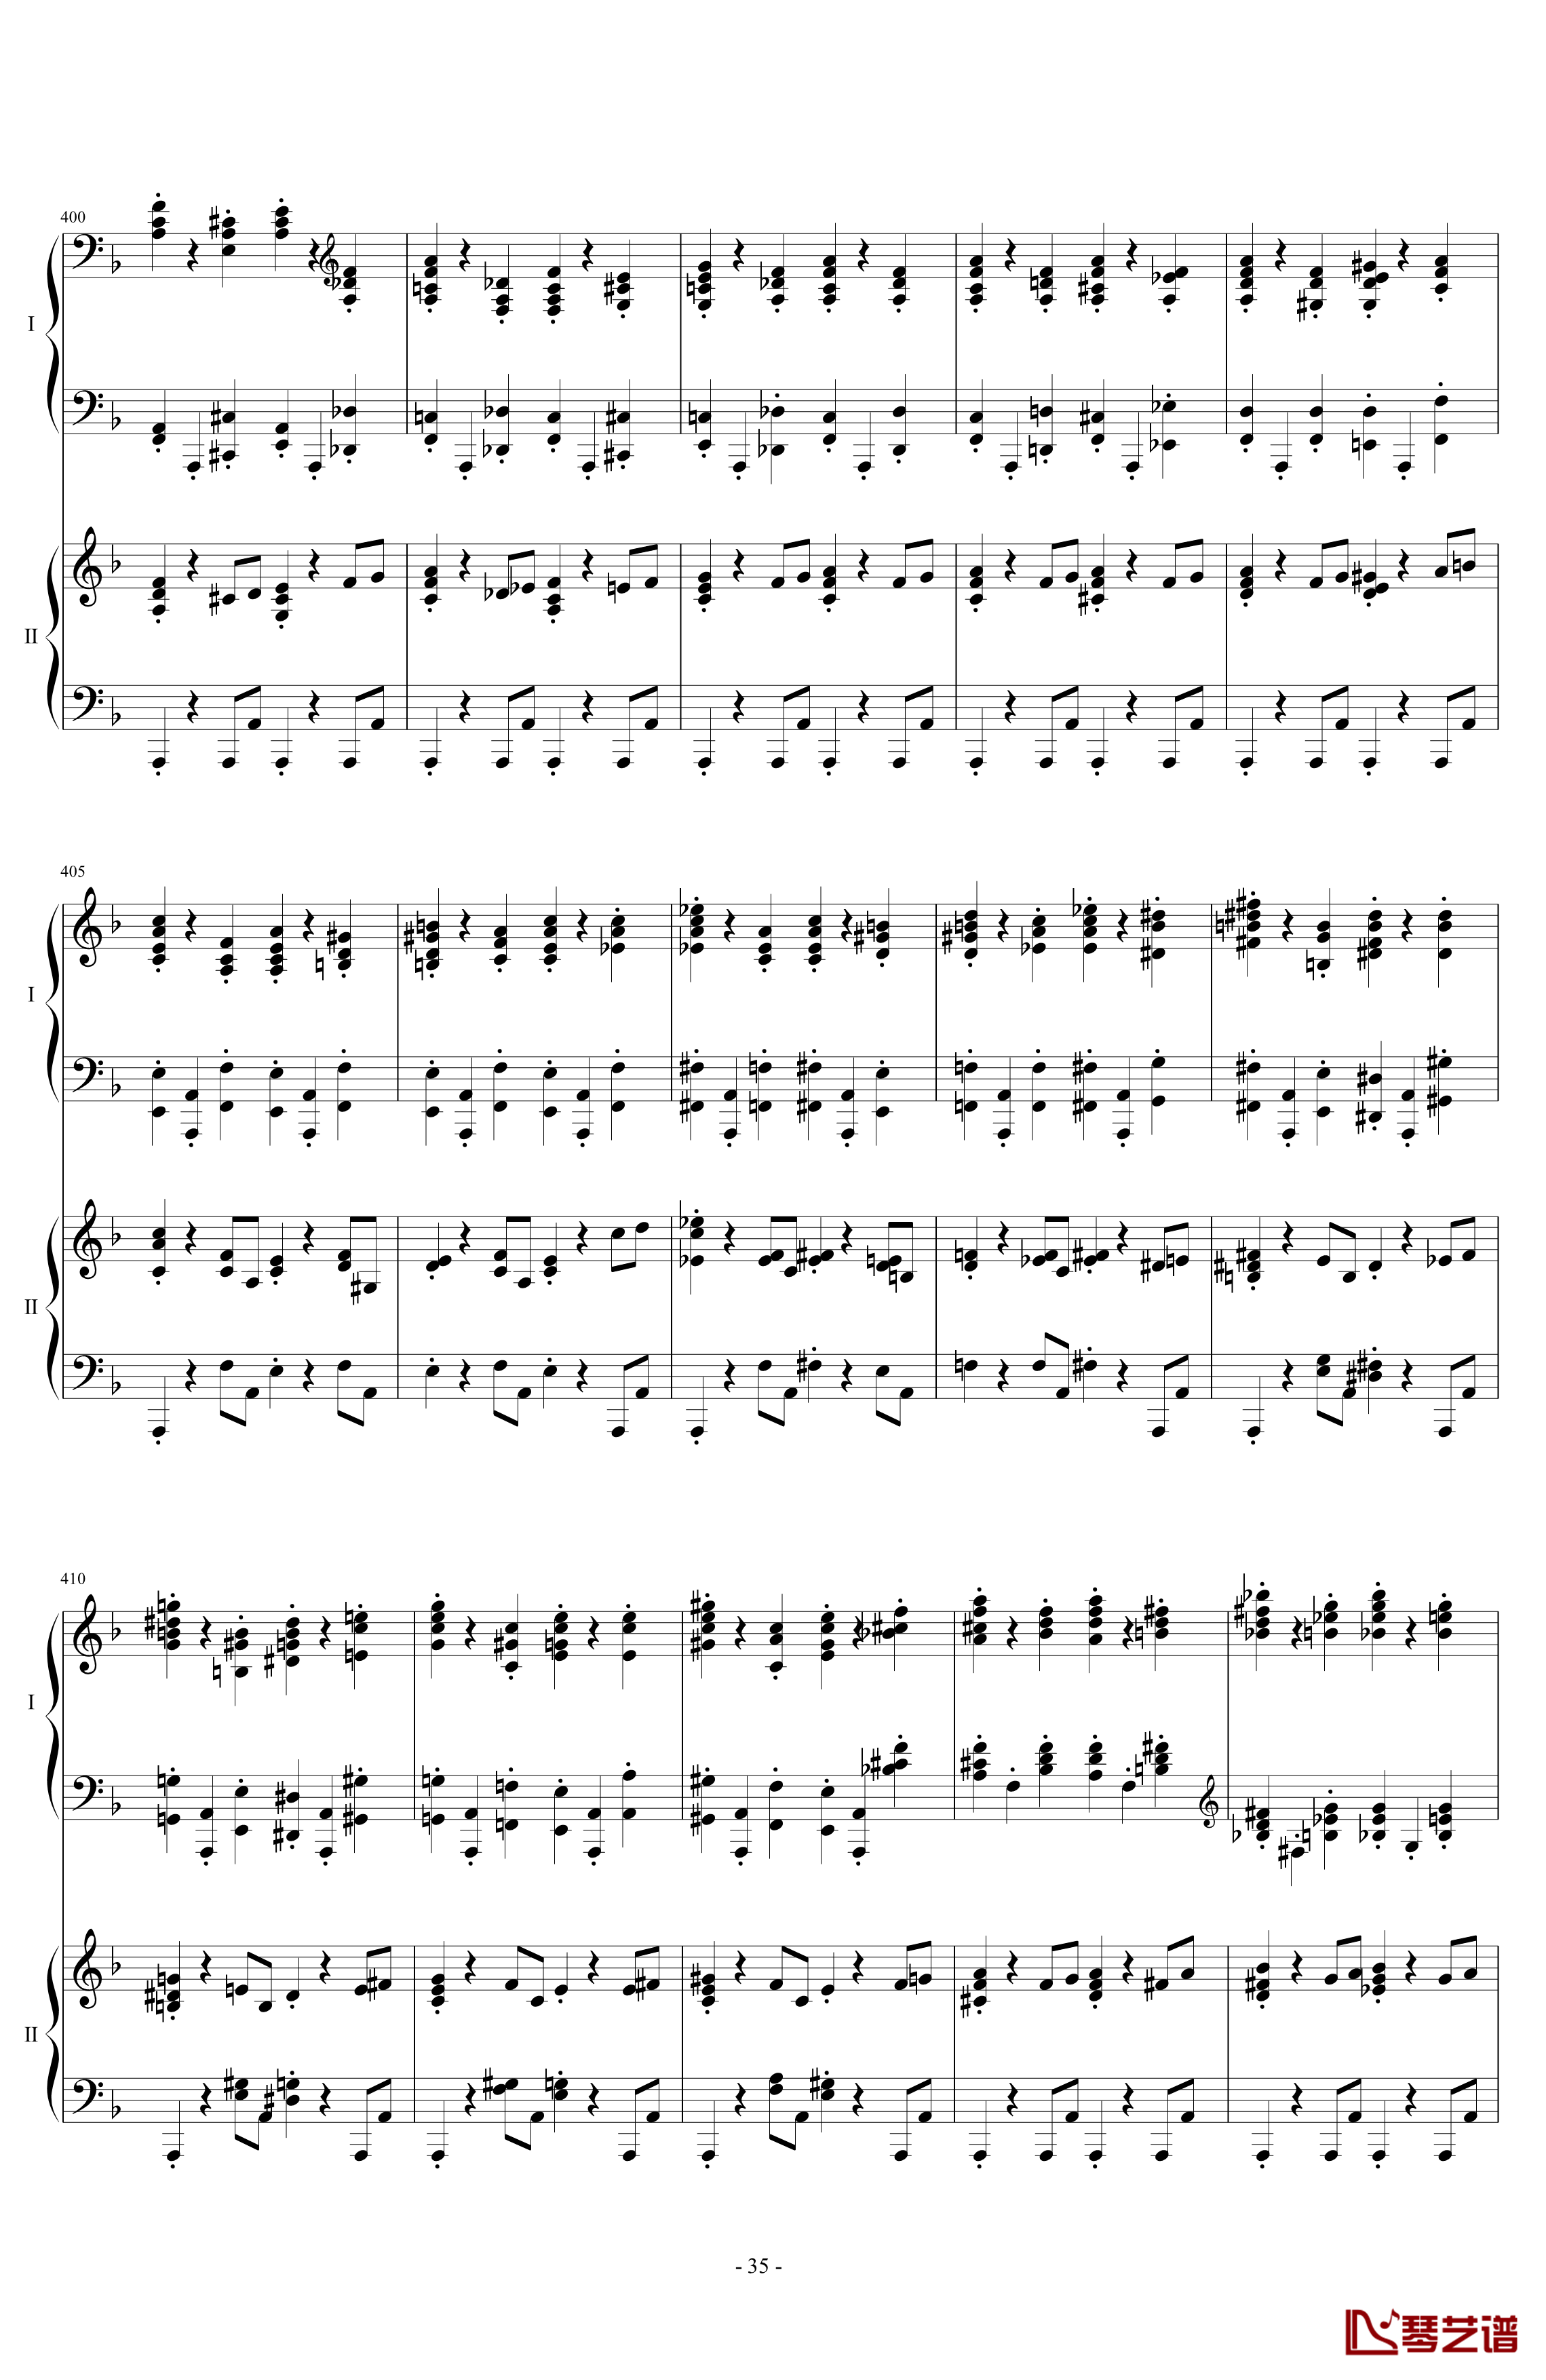 拉三第三乐章41页双钢琴钢琴谱-最难钢琴曲-拉赫马尼若夫35